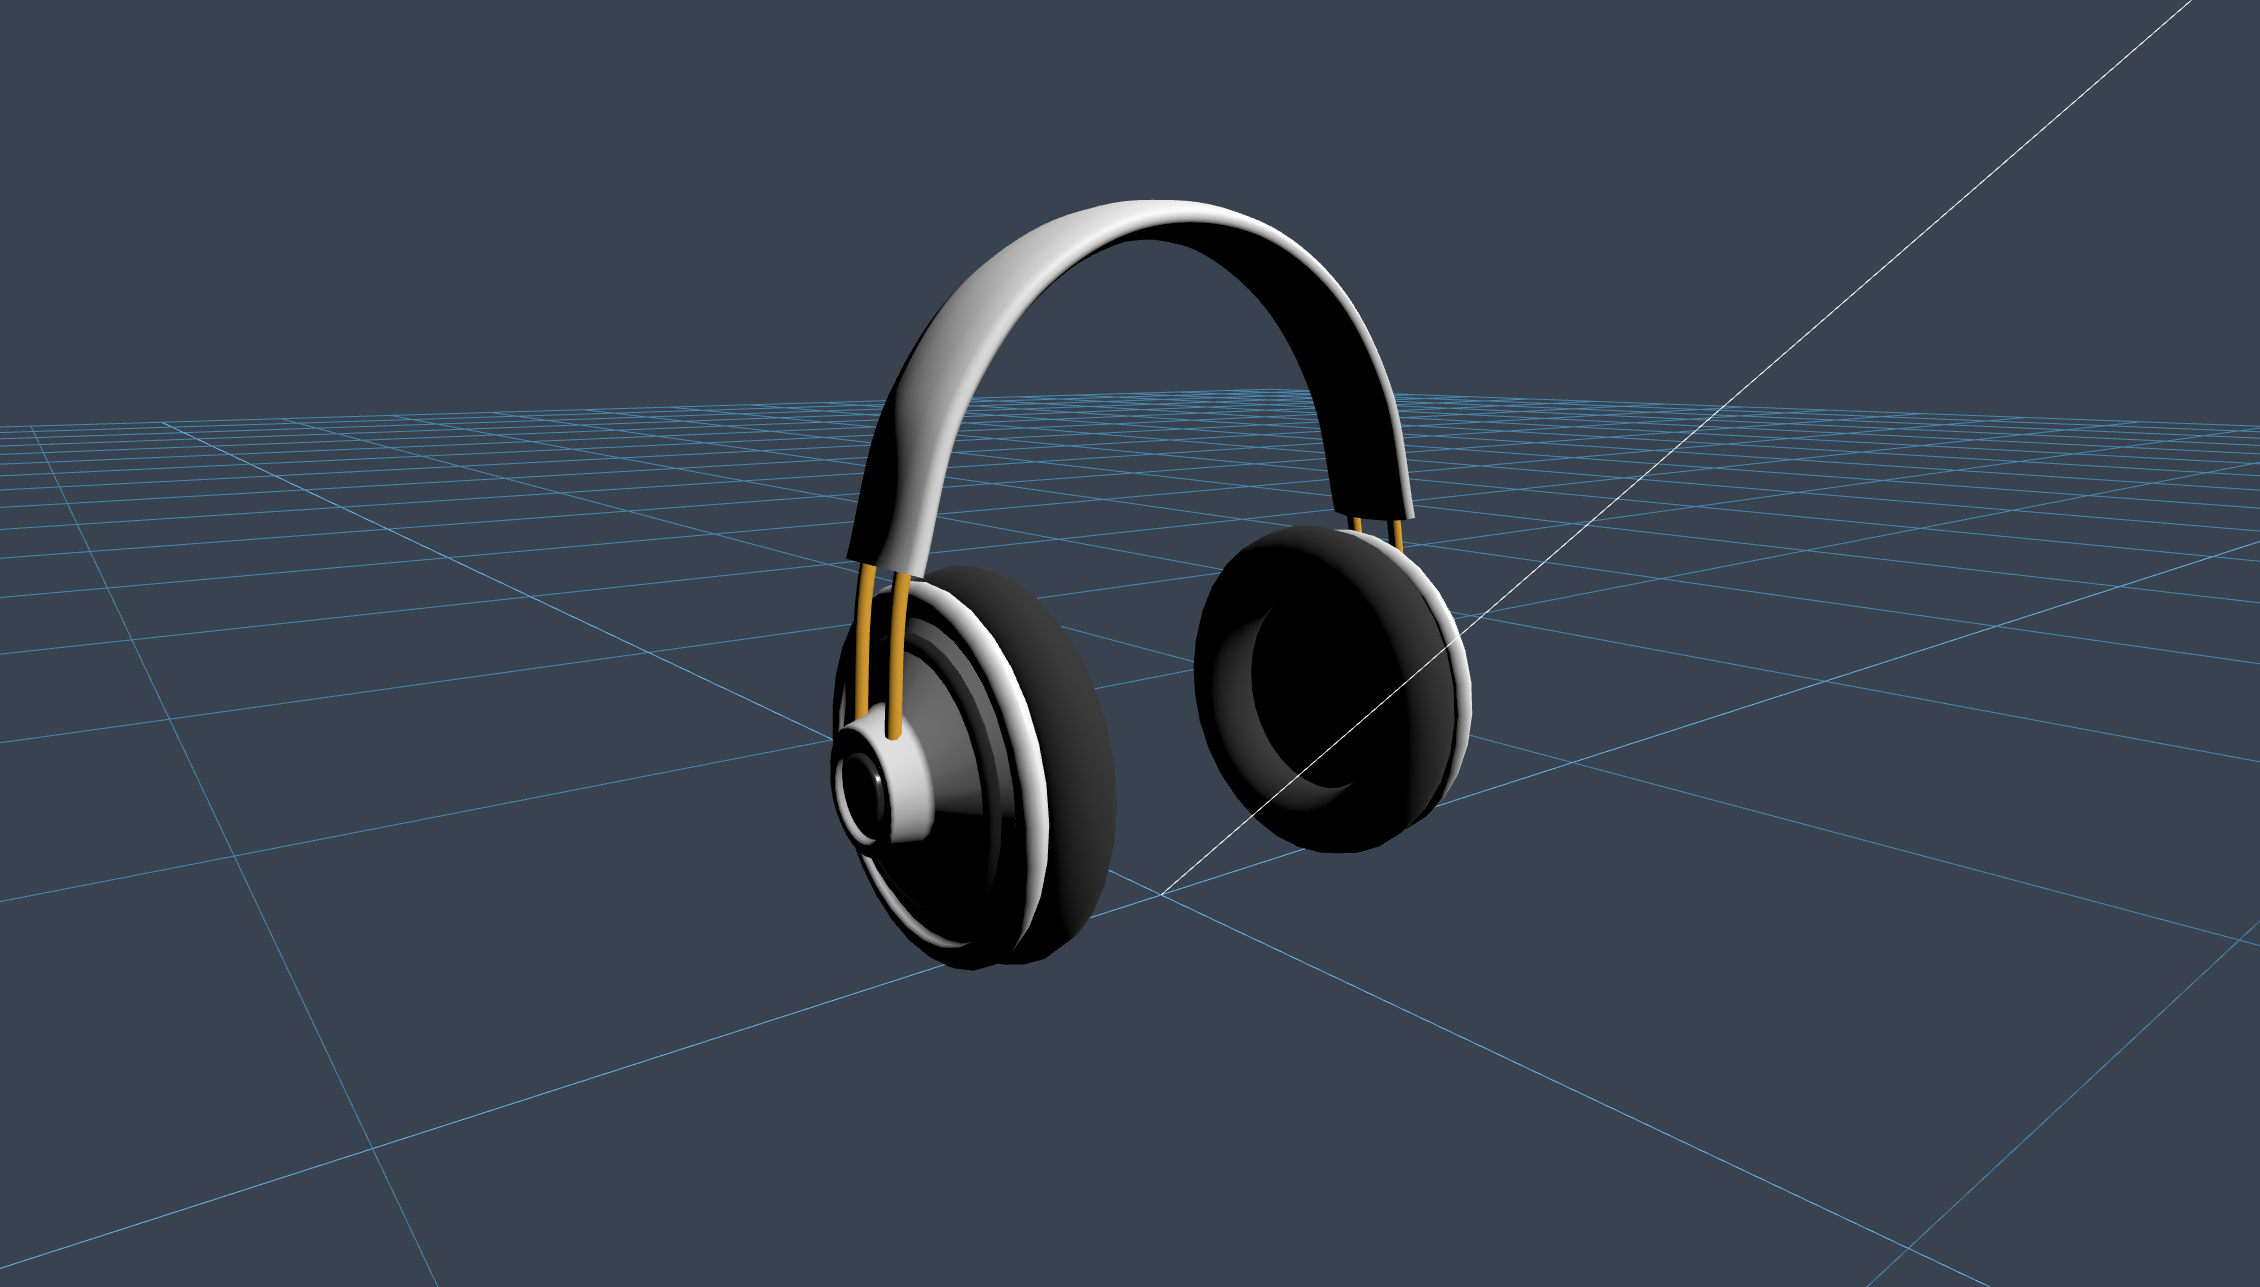 Headphones - utworzony przez Niilo Korppi z 3D